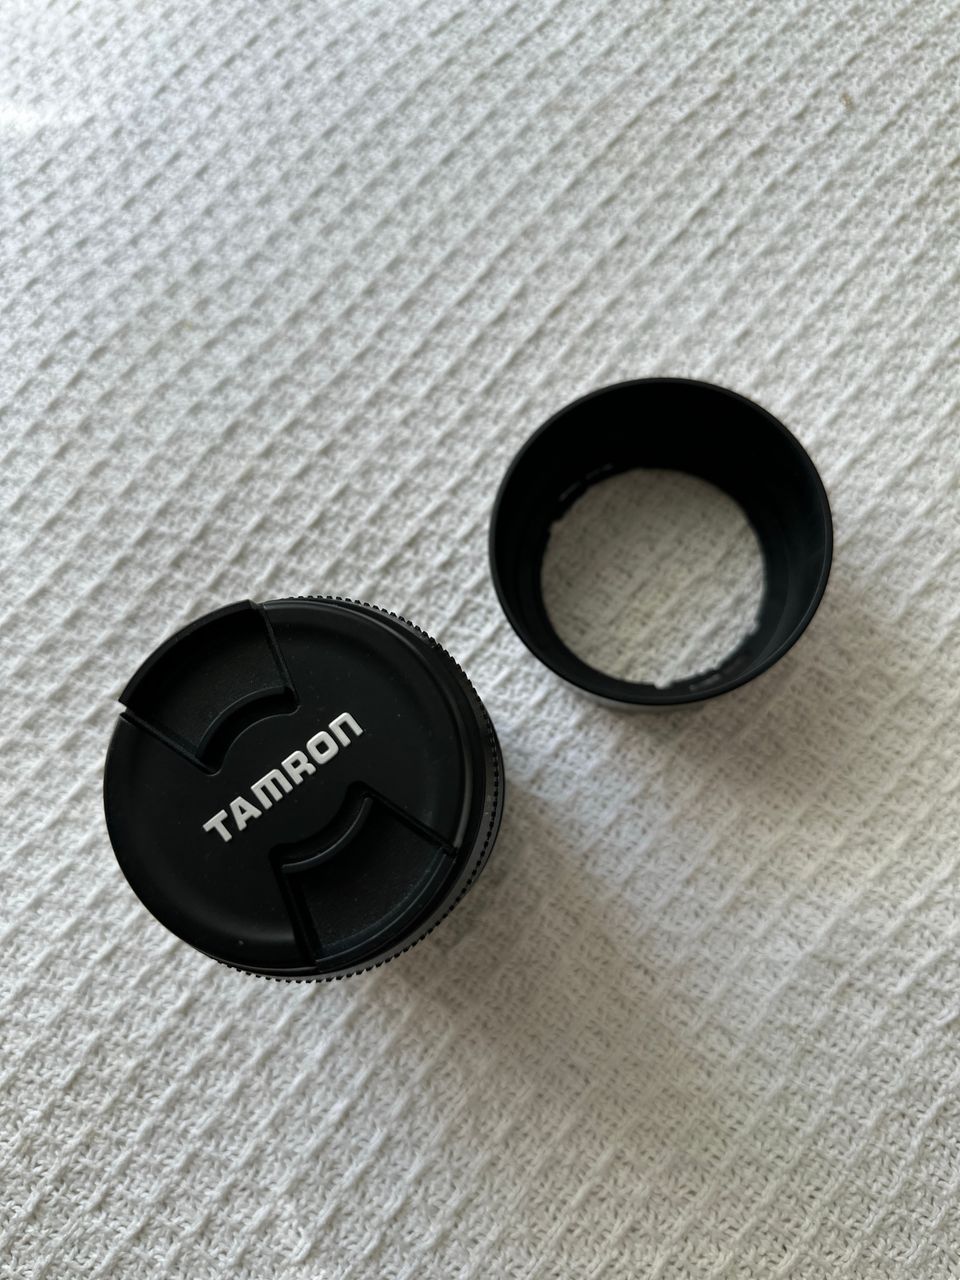 Tamron AF 70-300mm 1:4-5.6 TELE-MACRO